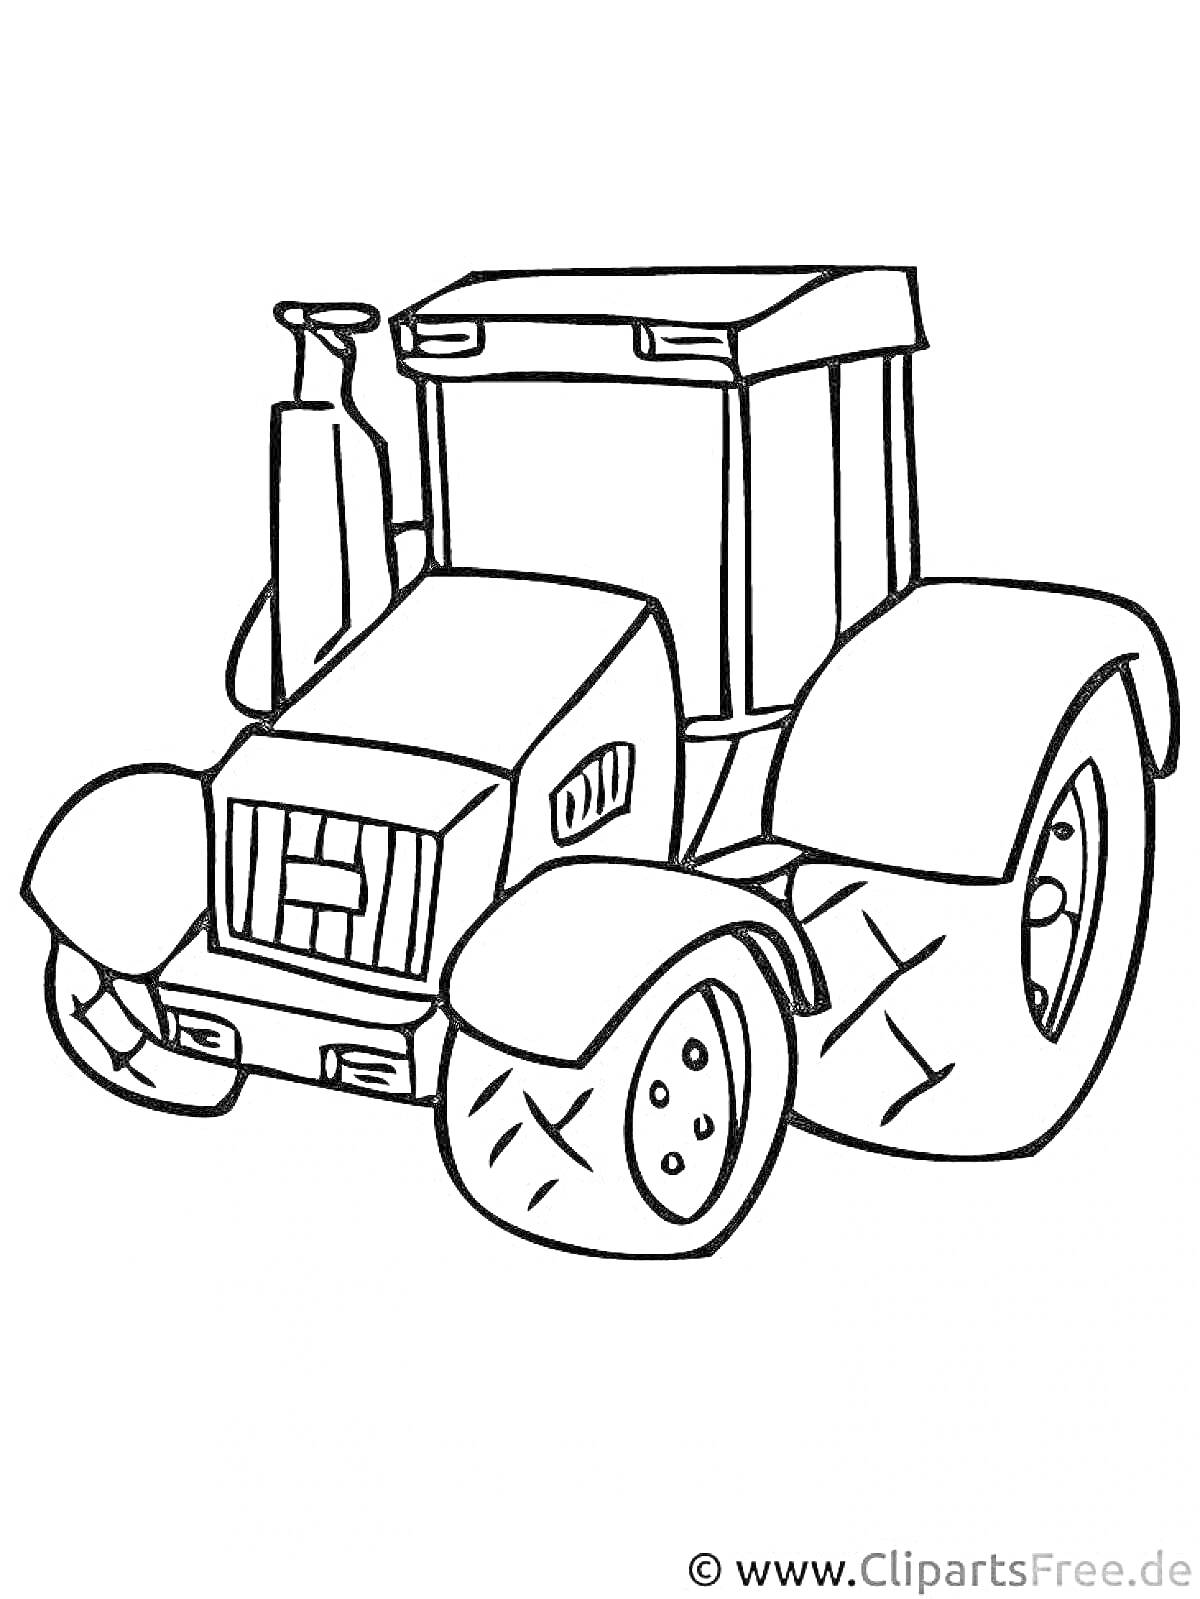 Нарисованный трактор с большими колесами